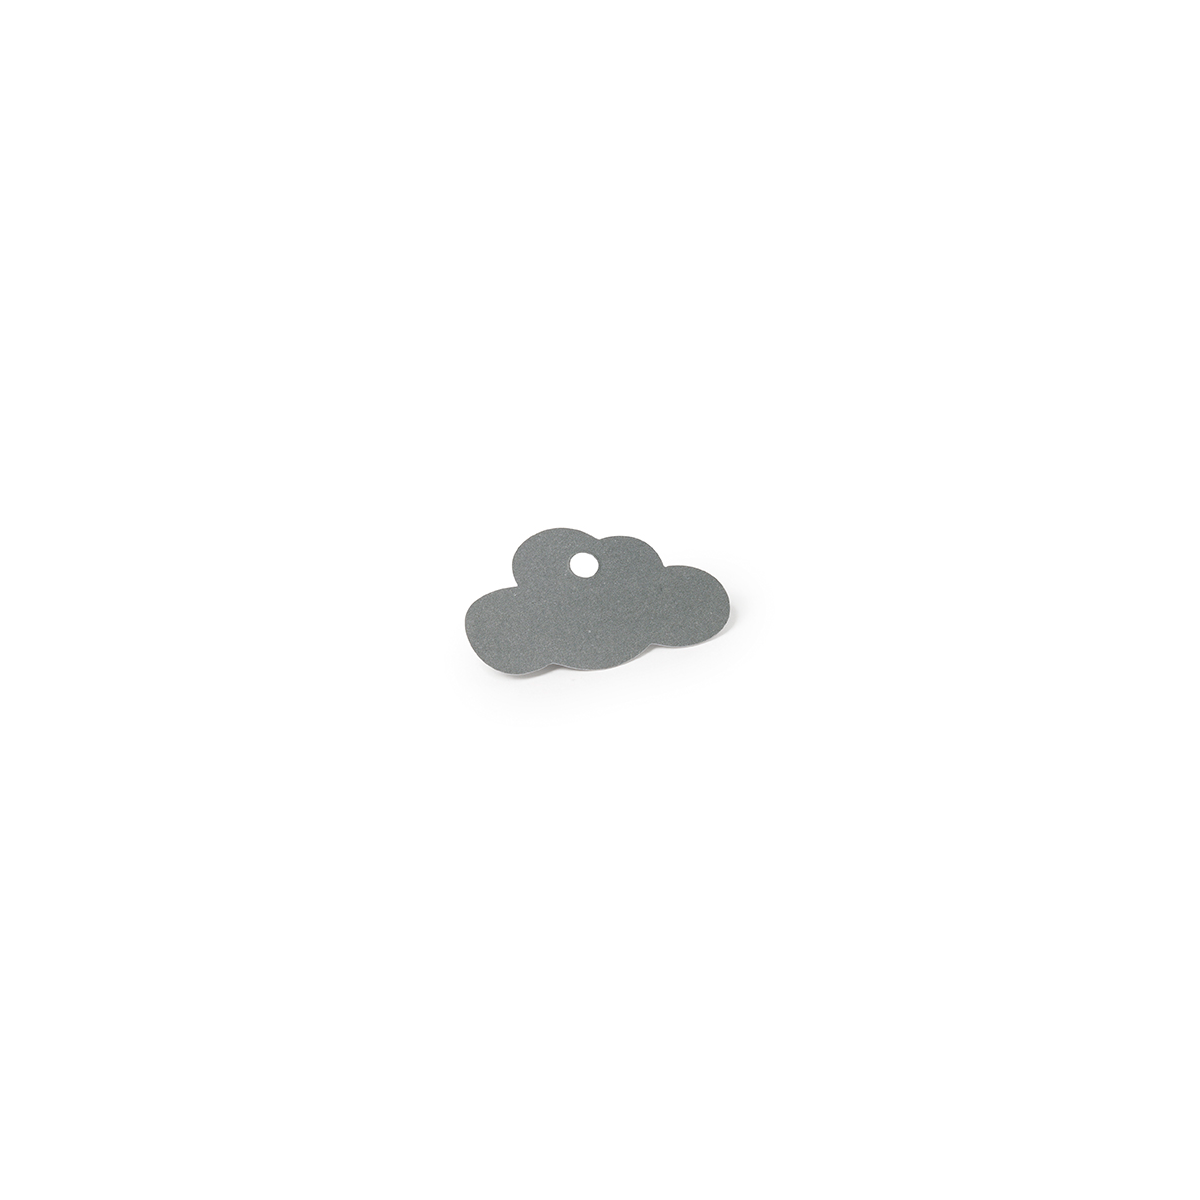 Etiquettes nuage grises